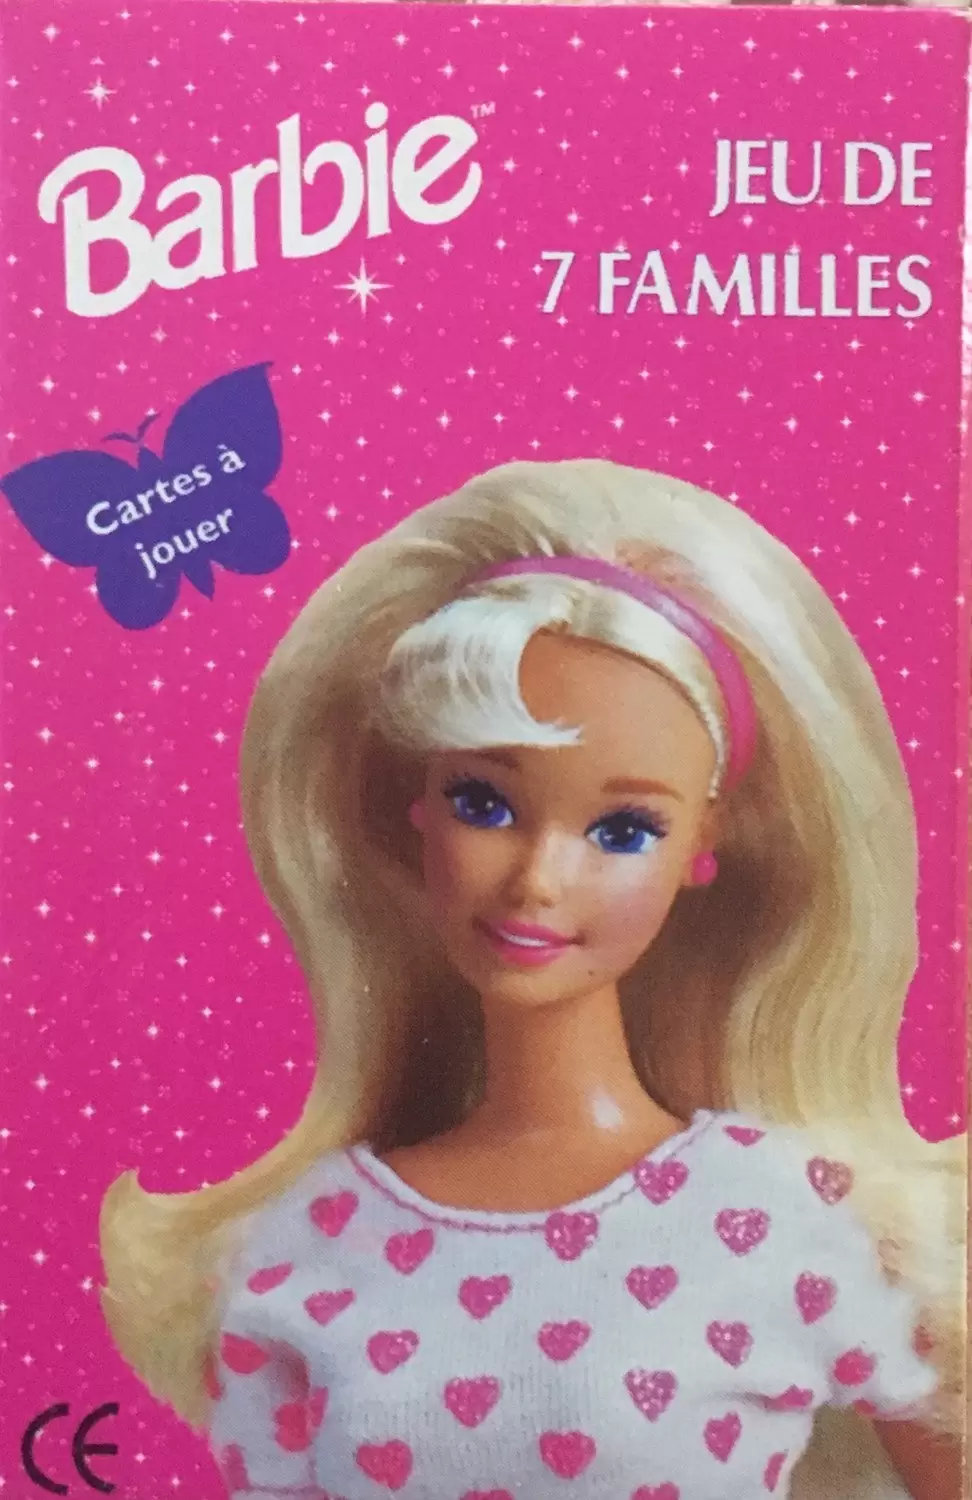 Jeu des 7 Familles - Barbie